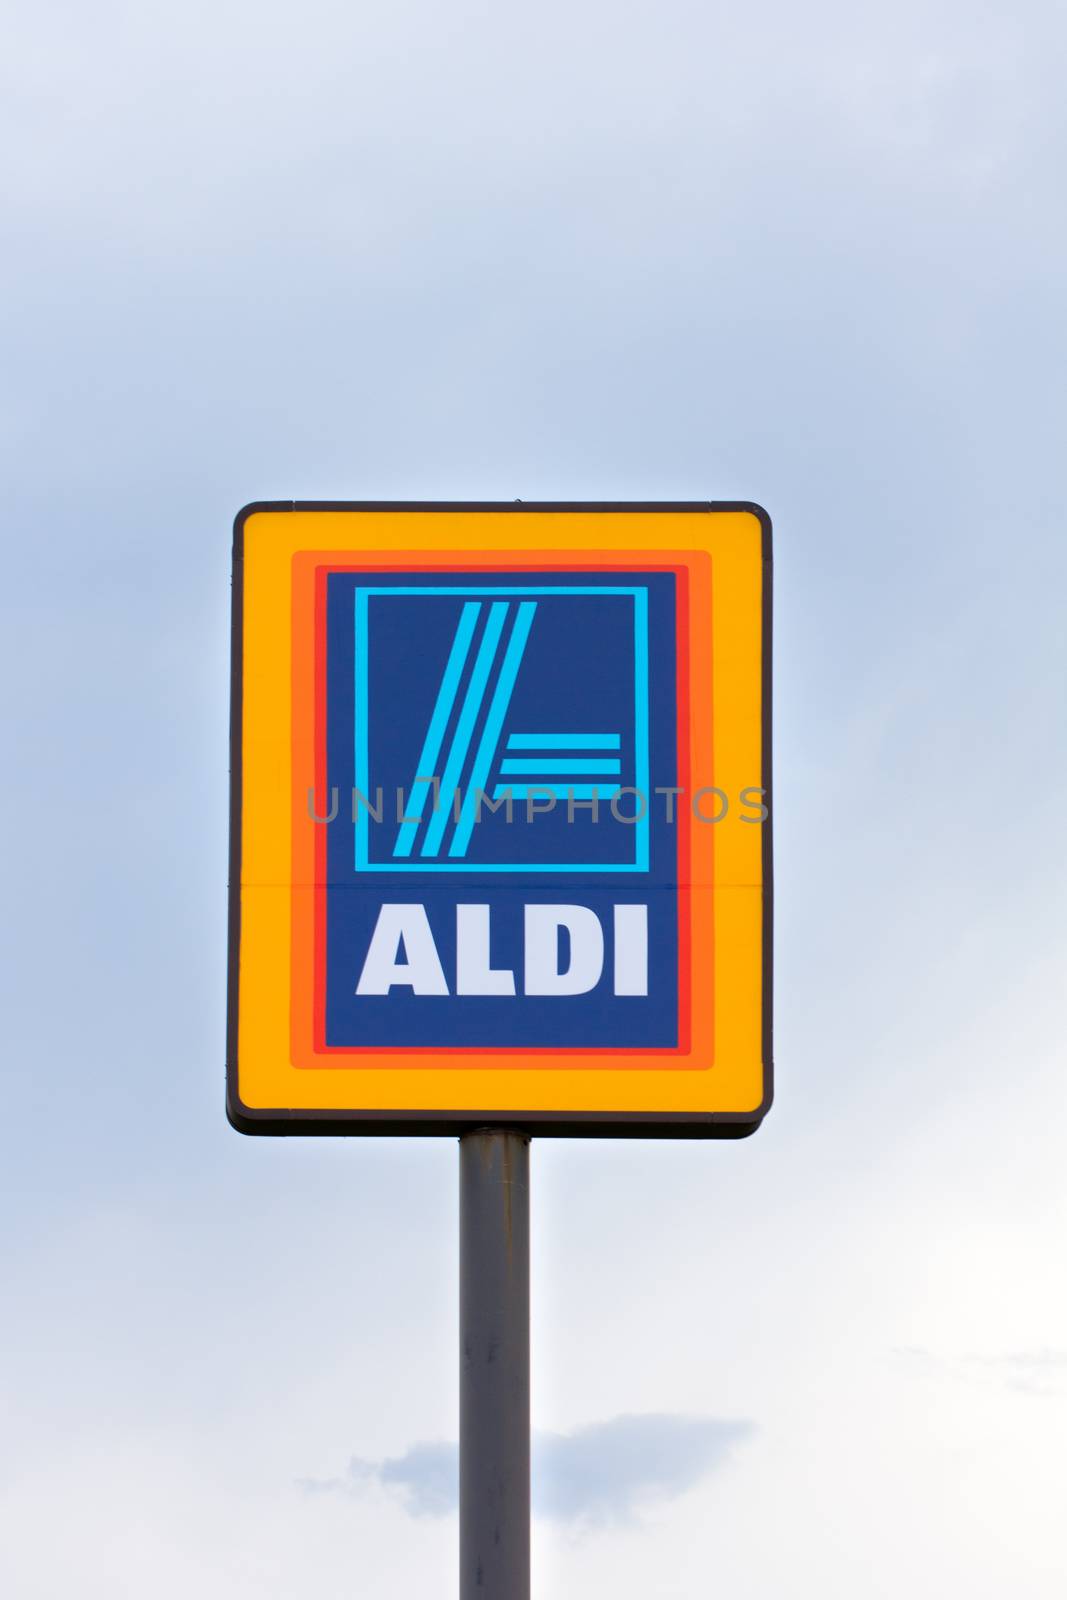 Aldi Supermarket Sign by wolterk